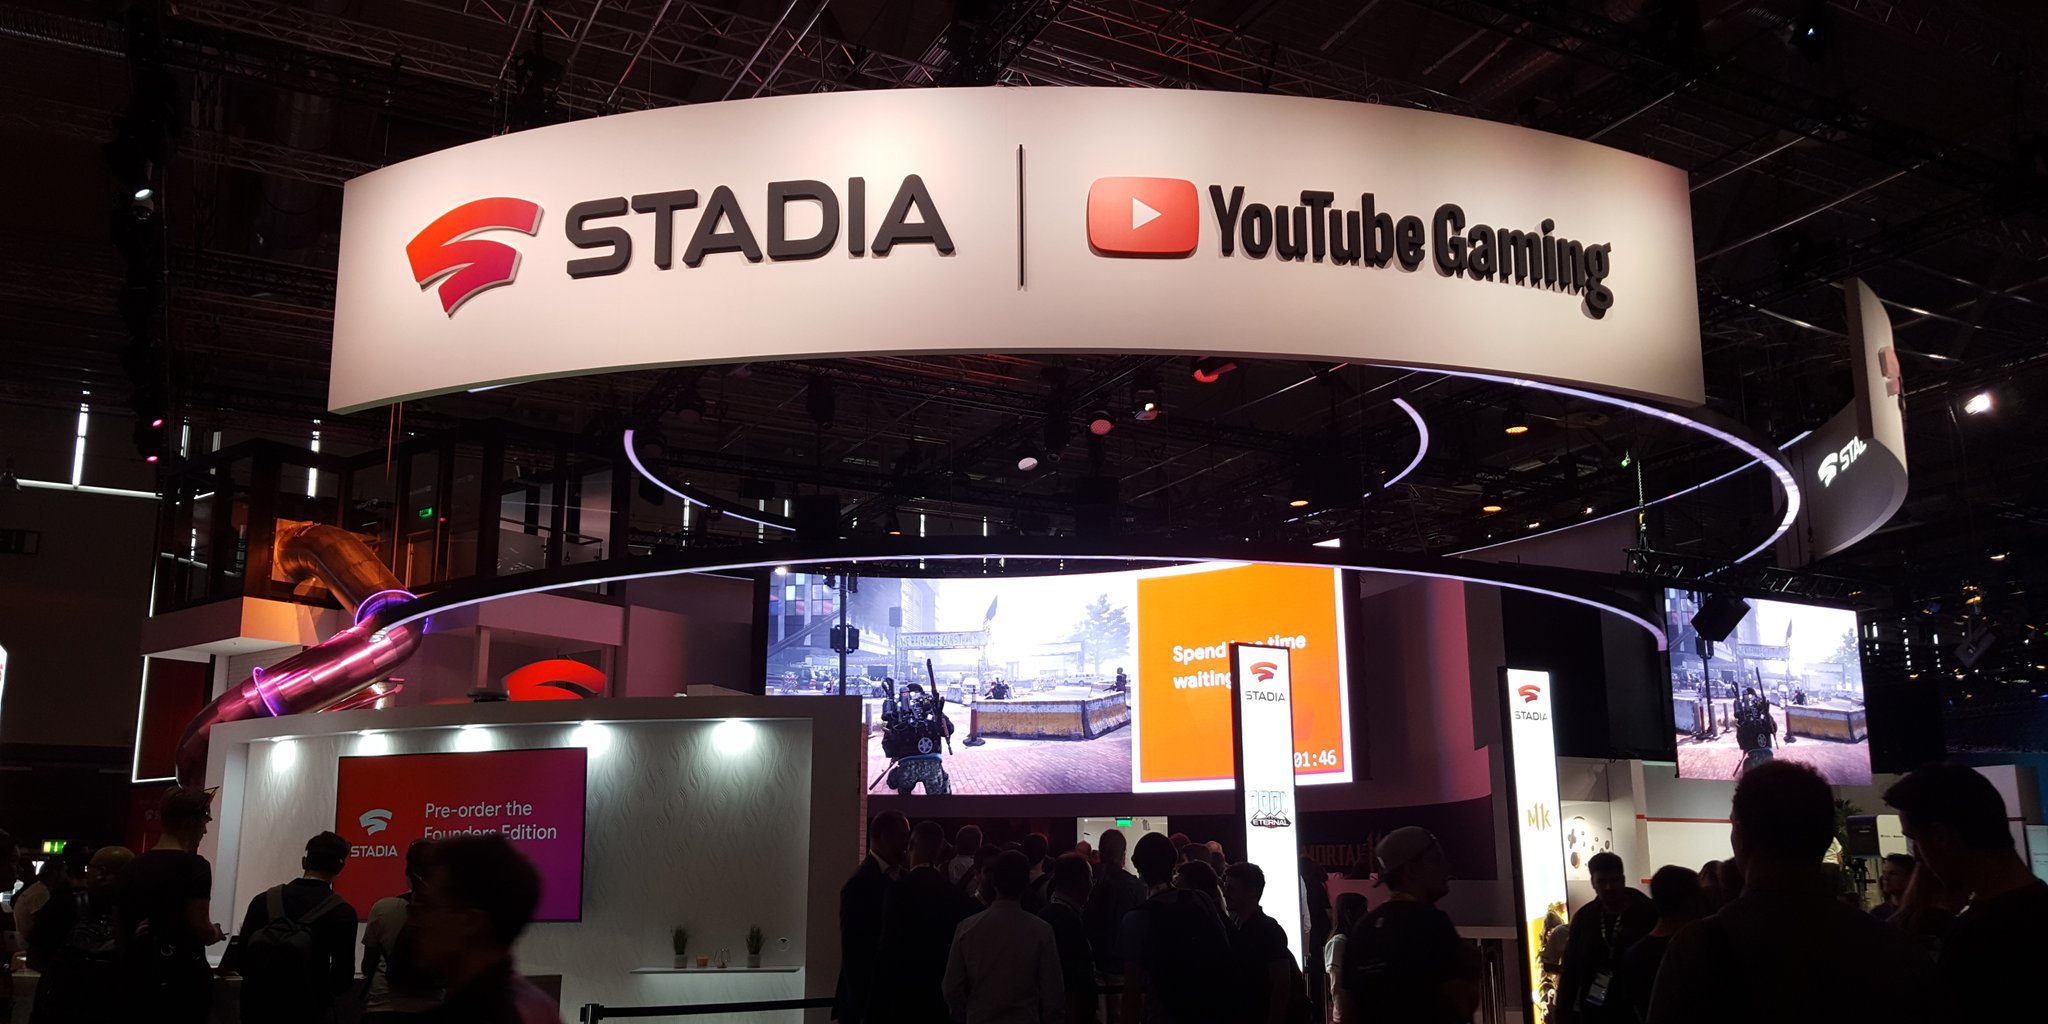 [Update: Video tour] Aqui está o estande do Google Stadia na Gamescom e sim, ele tem um slide